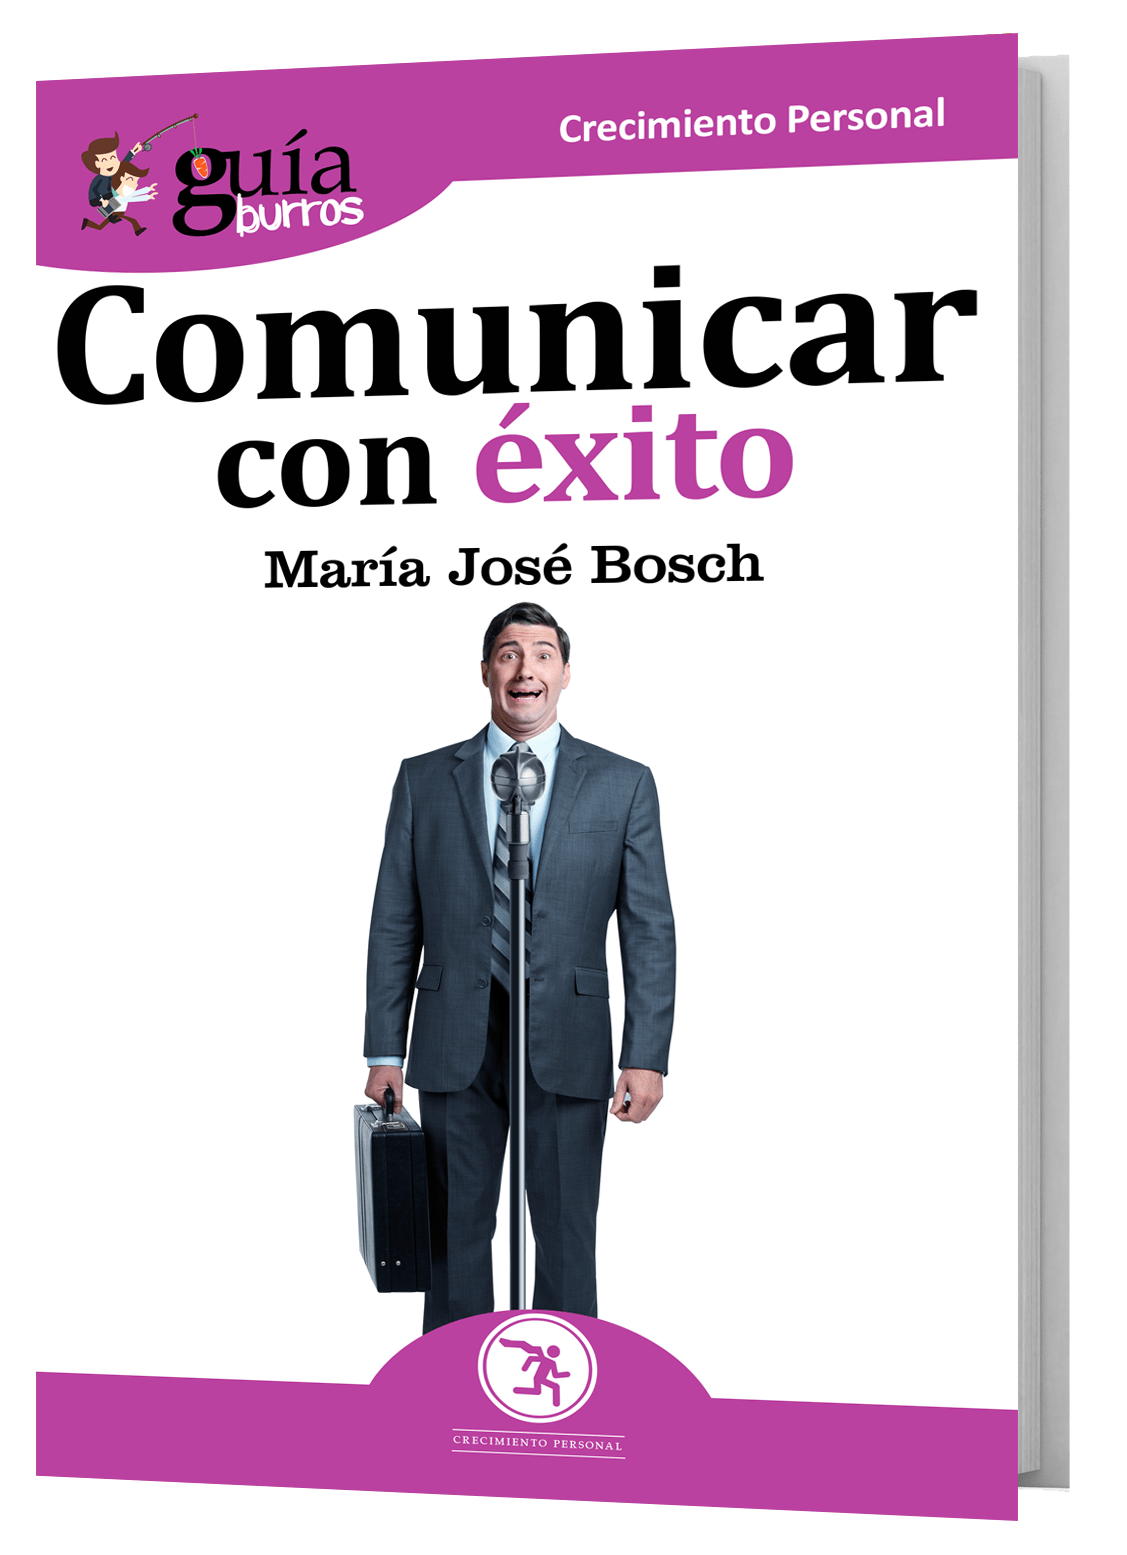 María José Bosch expone las habilidades necesarias para “comunicar con éxito».